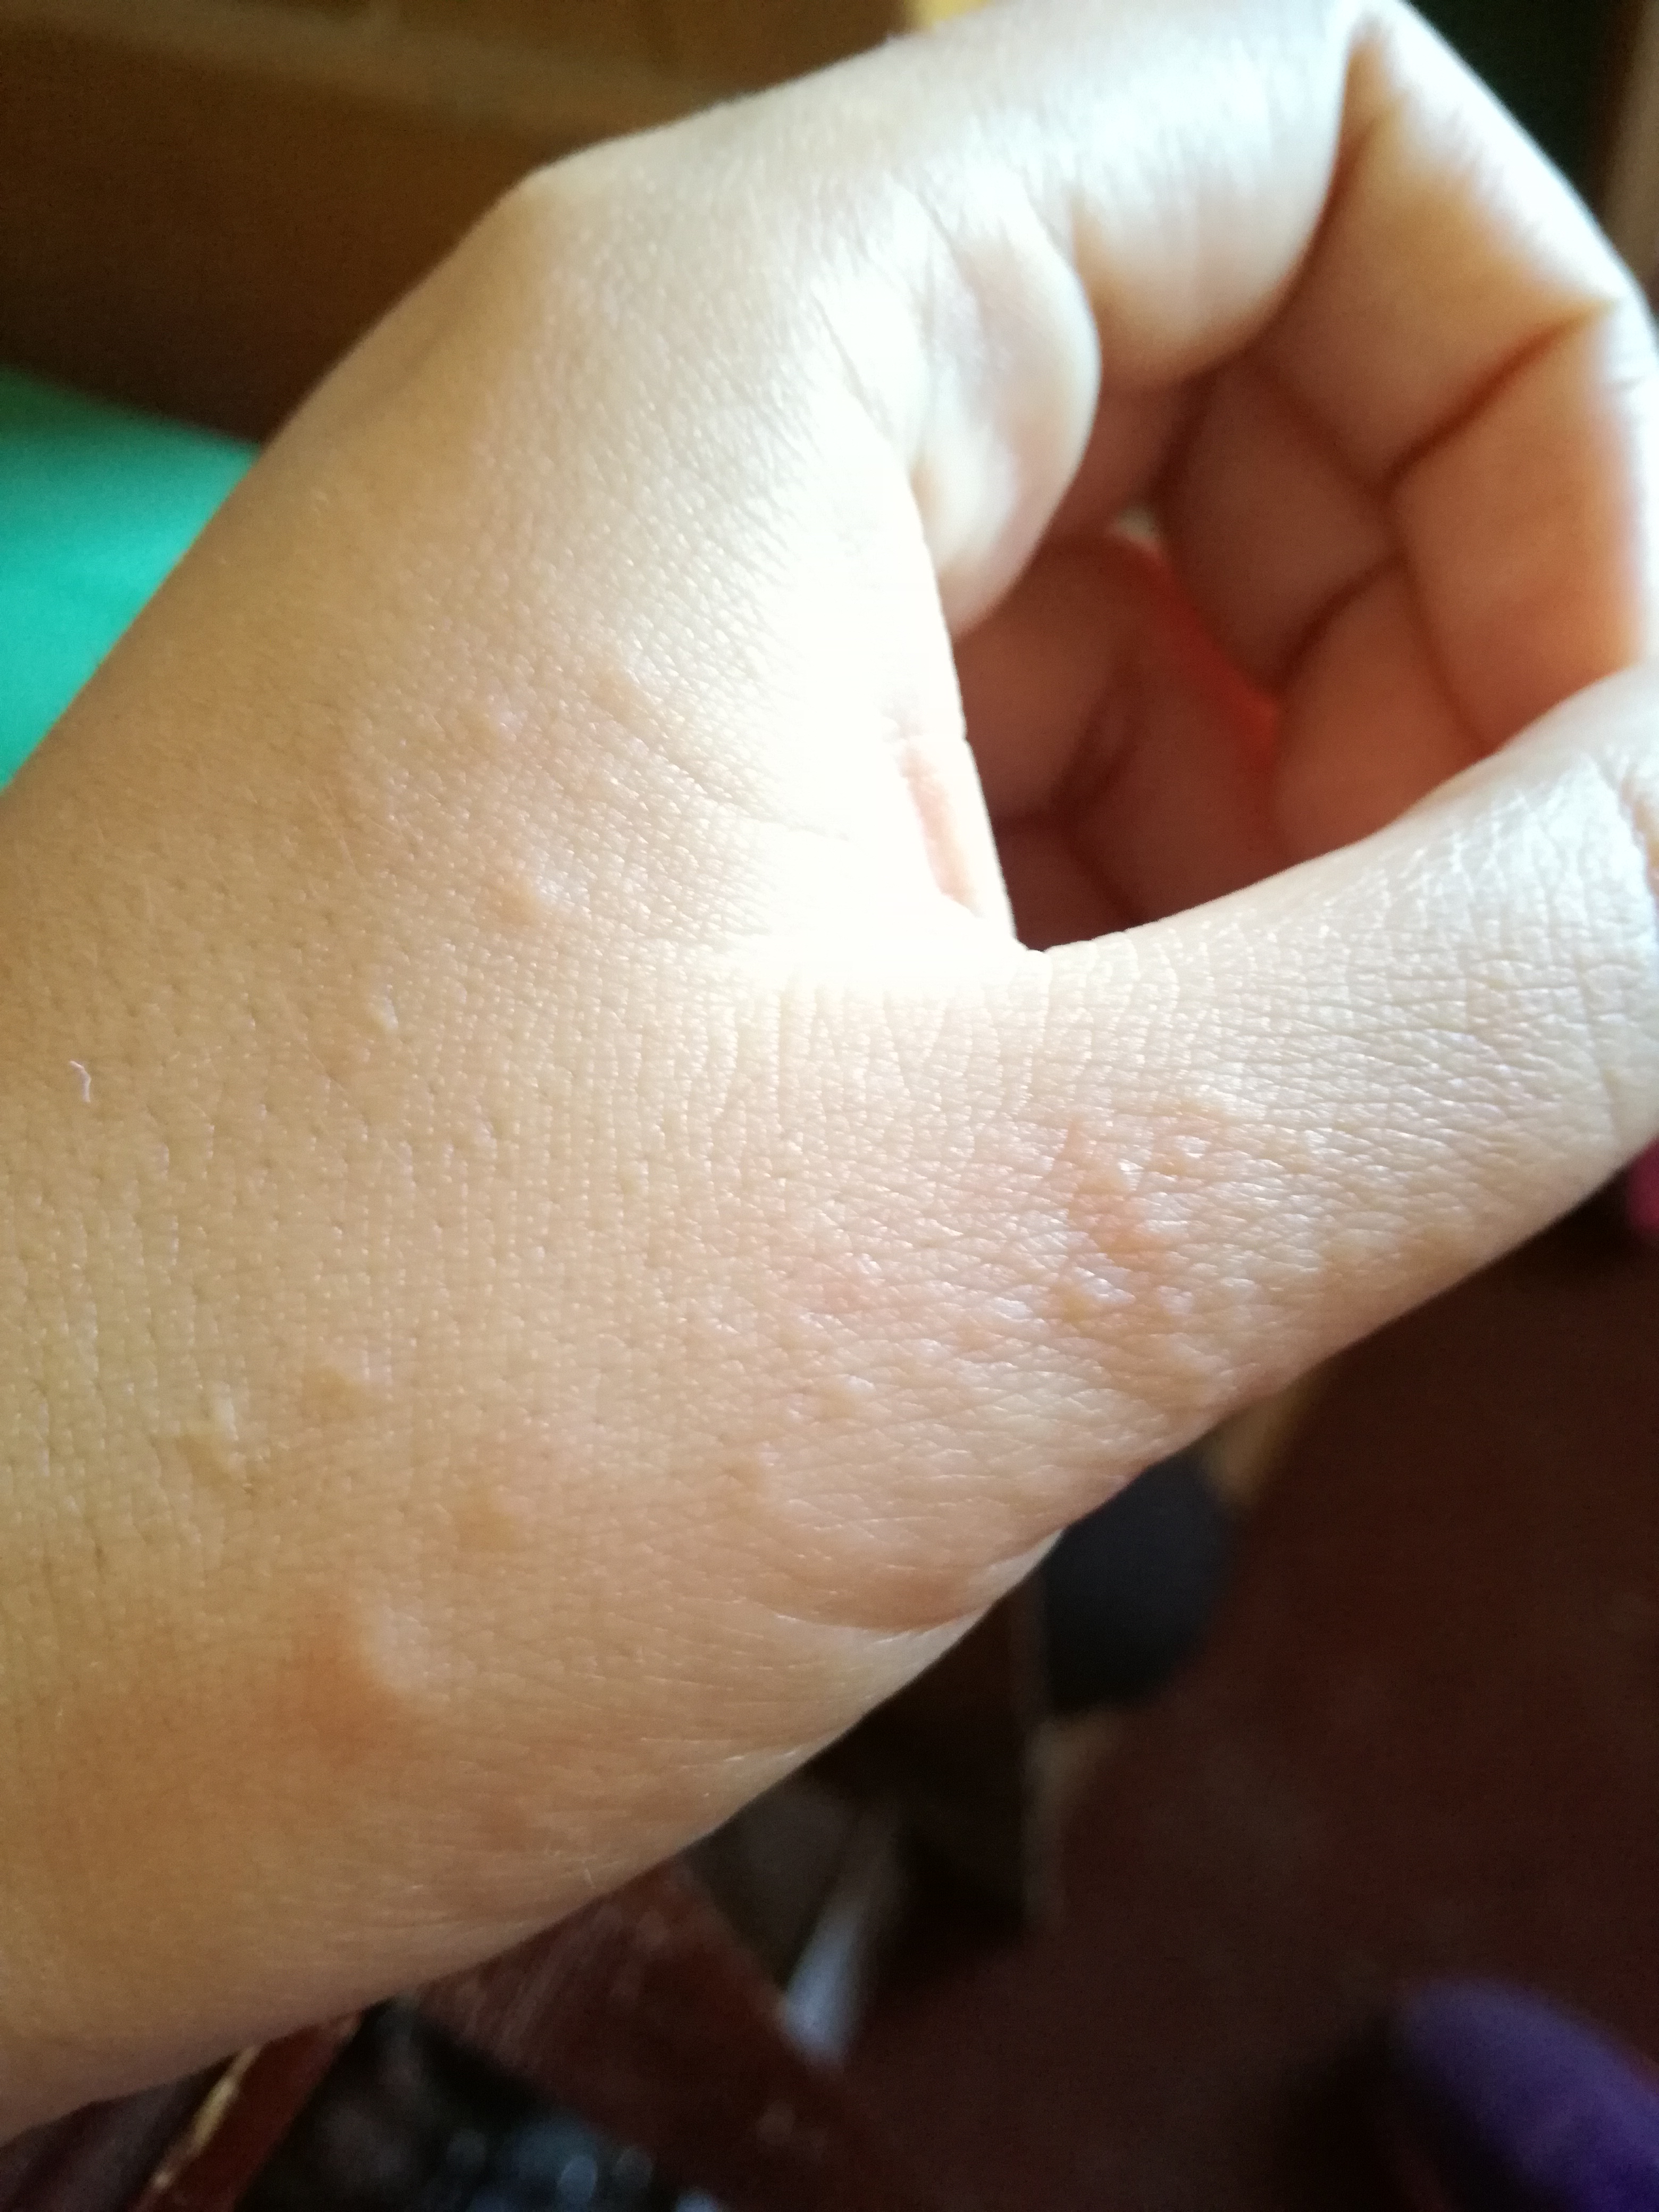 Granos en las manos picor hace pocos dias. – dermatologo.net